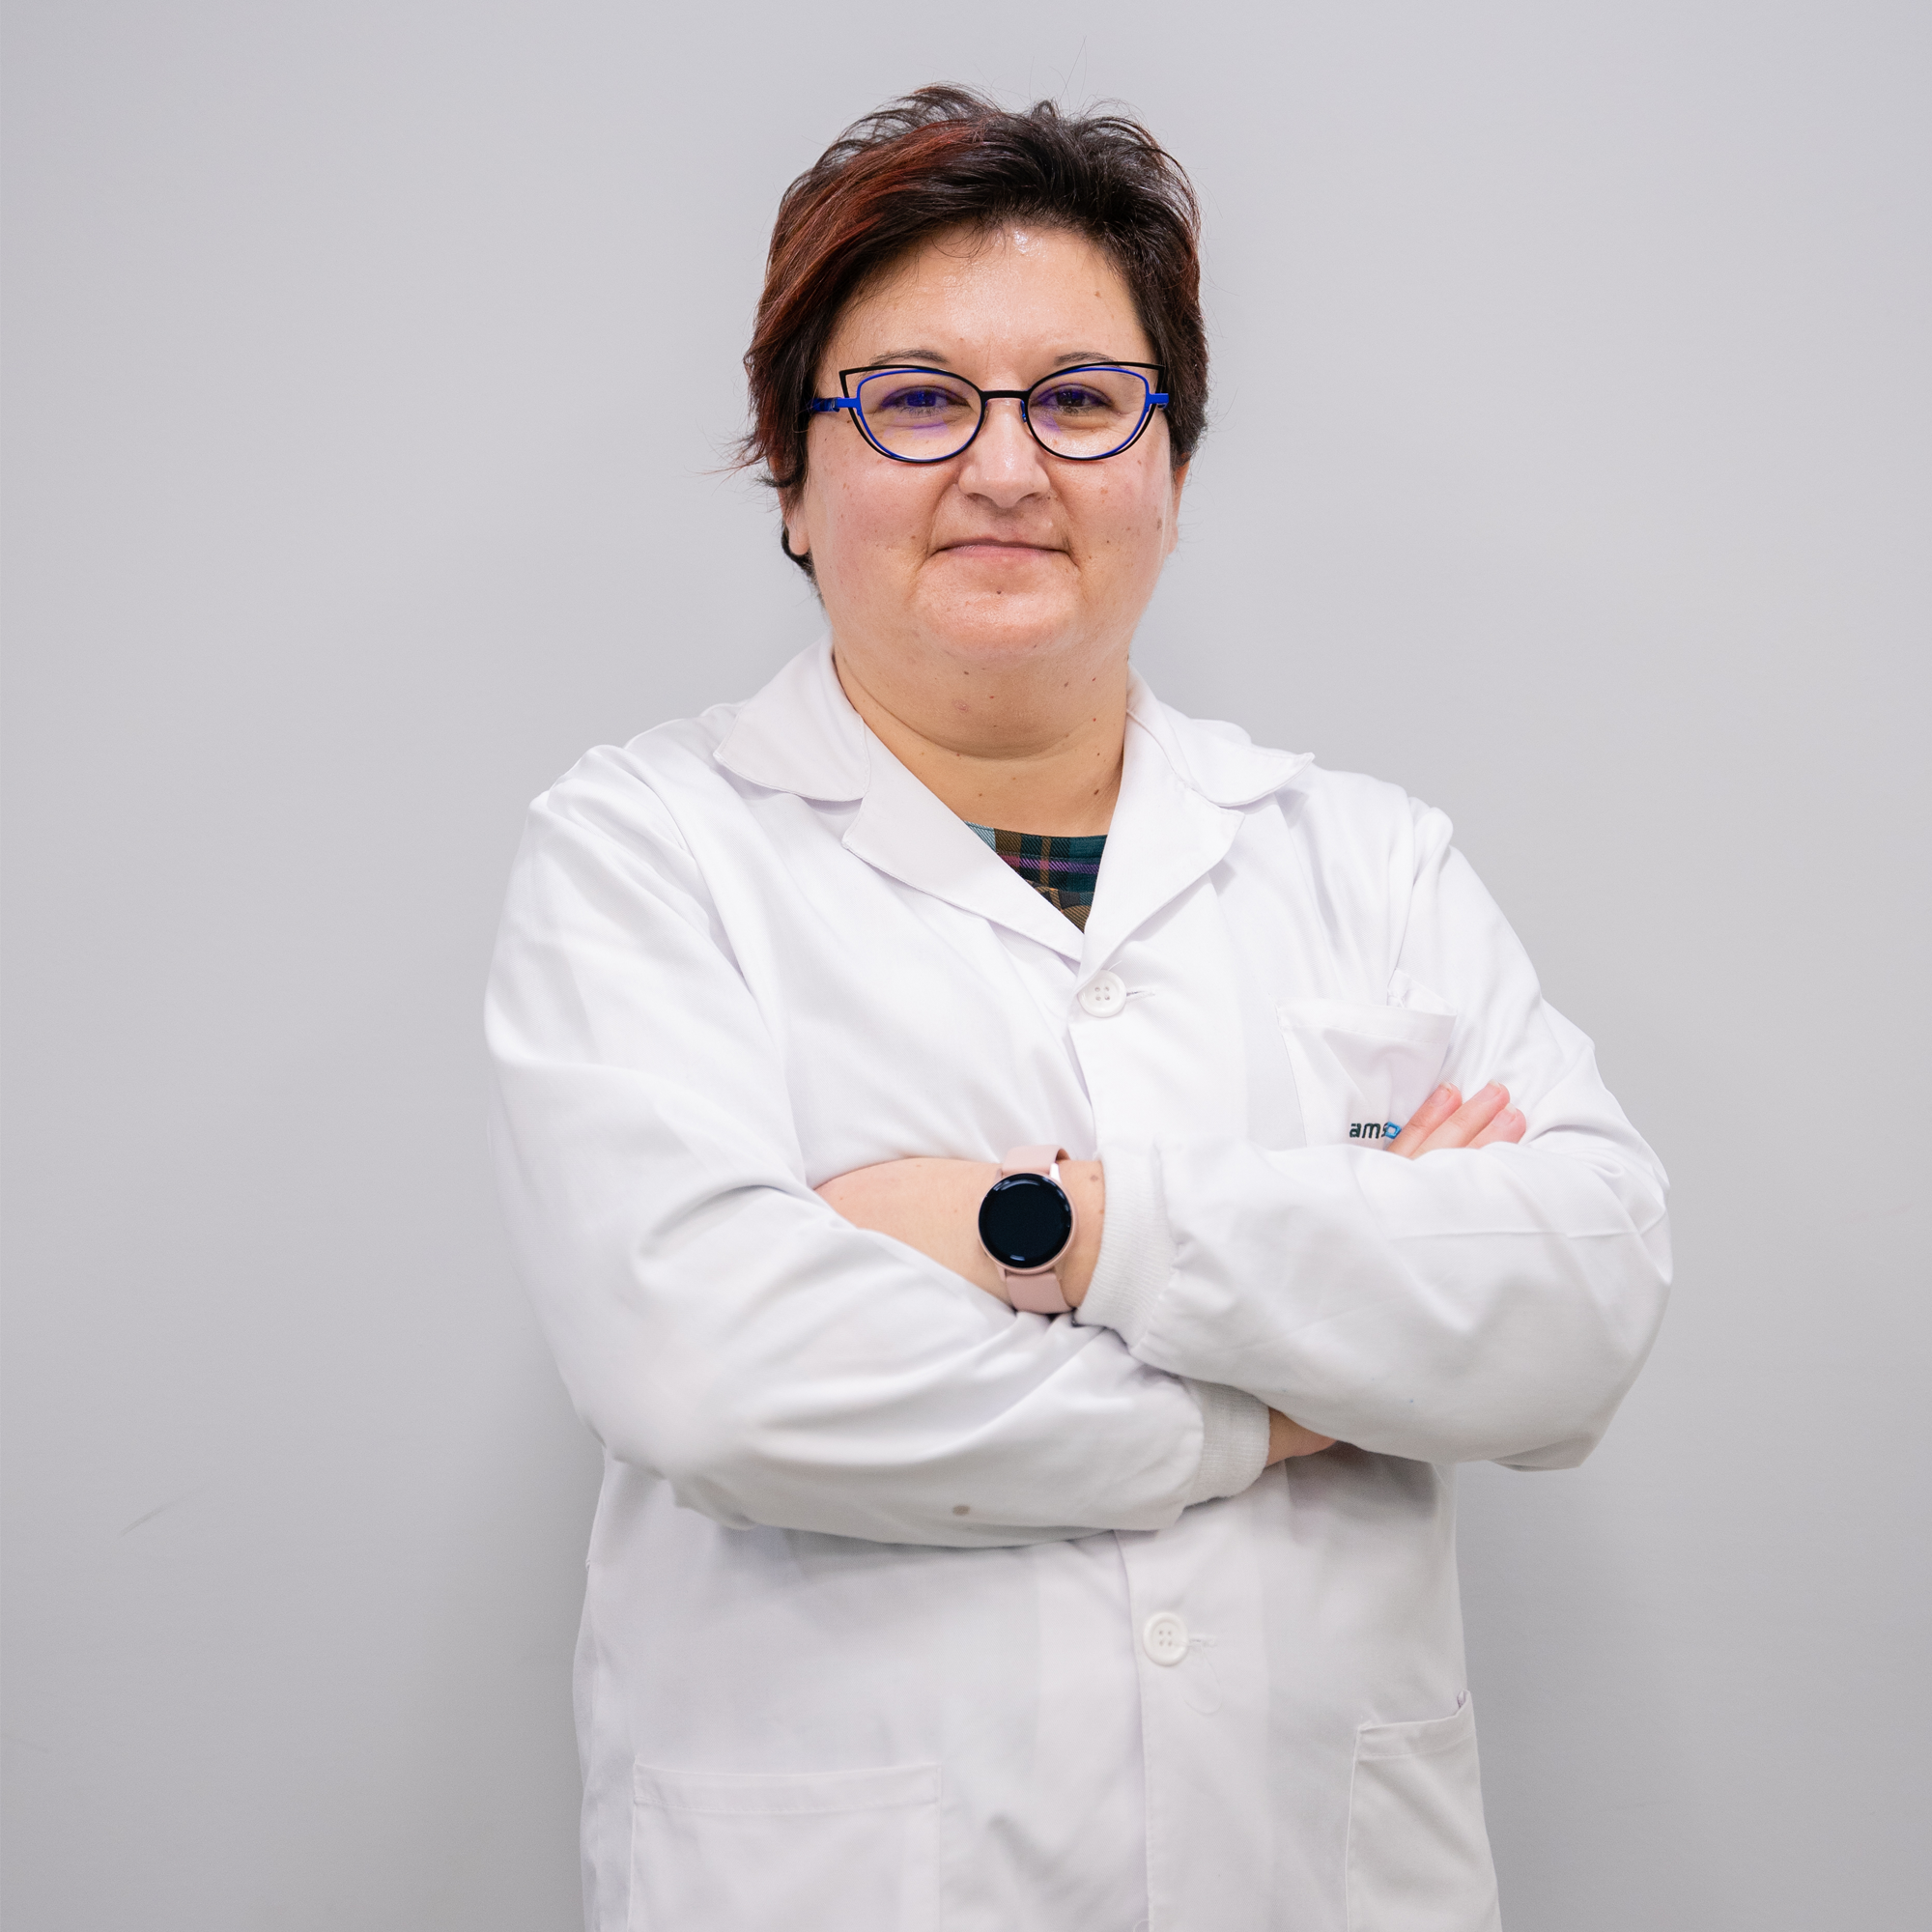 Ángeles Expósito - Principal scientist